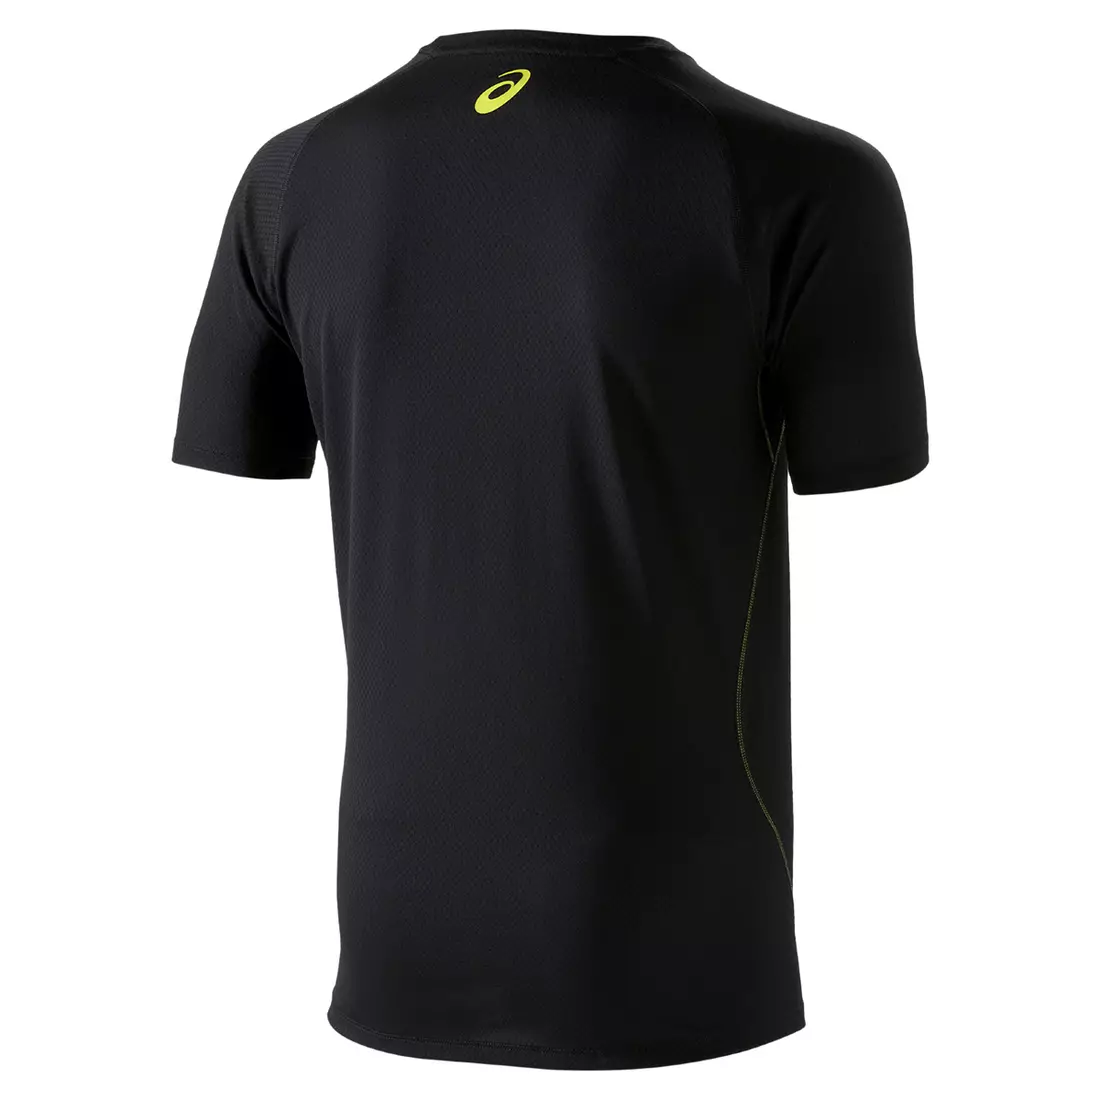 ASICS 110506-0904 GRAPHIC TOP - tricou alergare pentru bărbați, culoare: negru